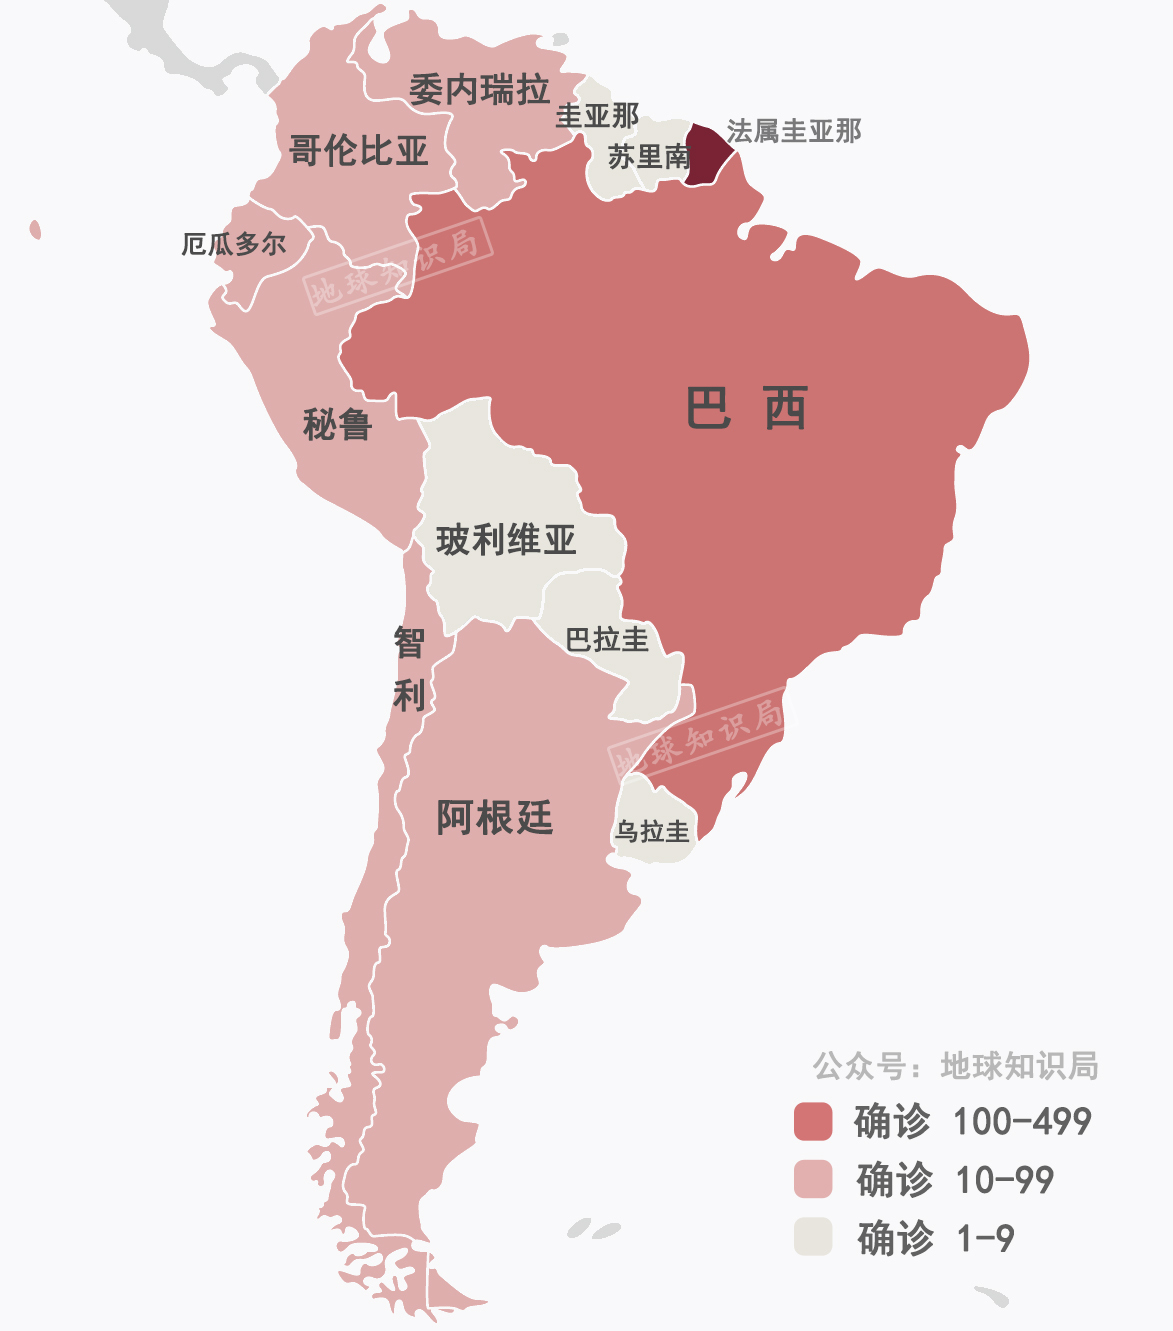 南美洲各个国家地图图片